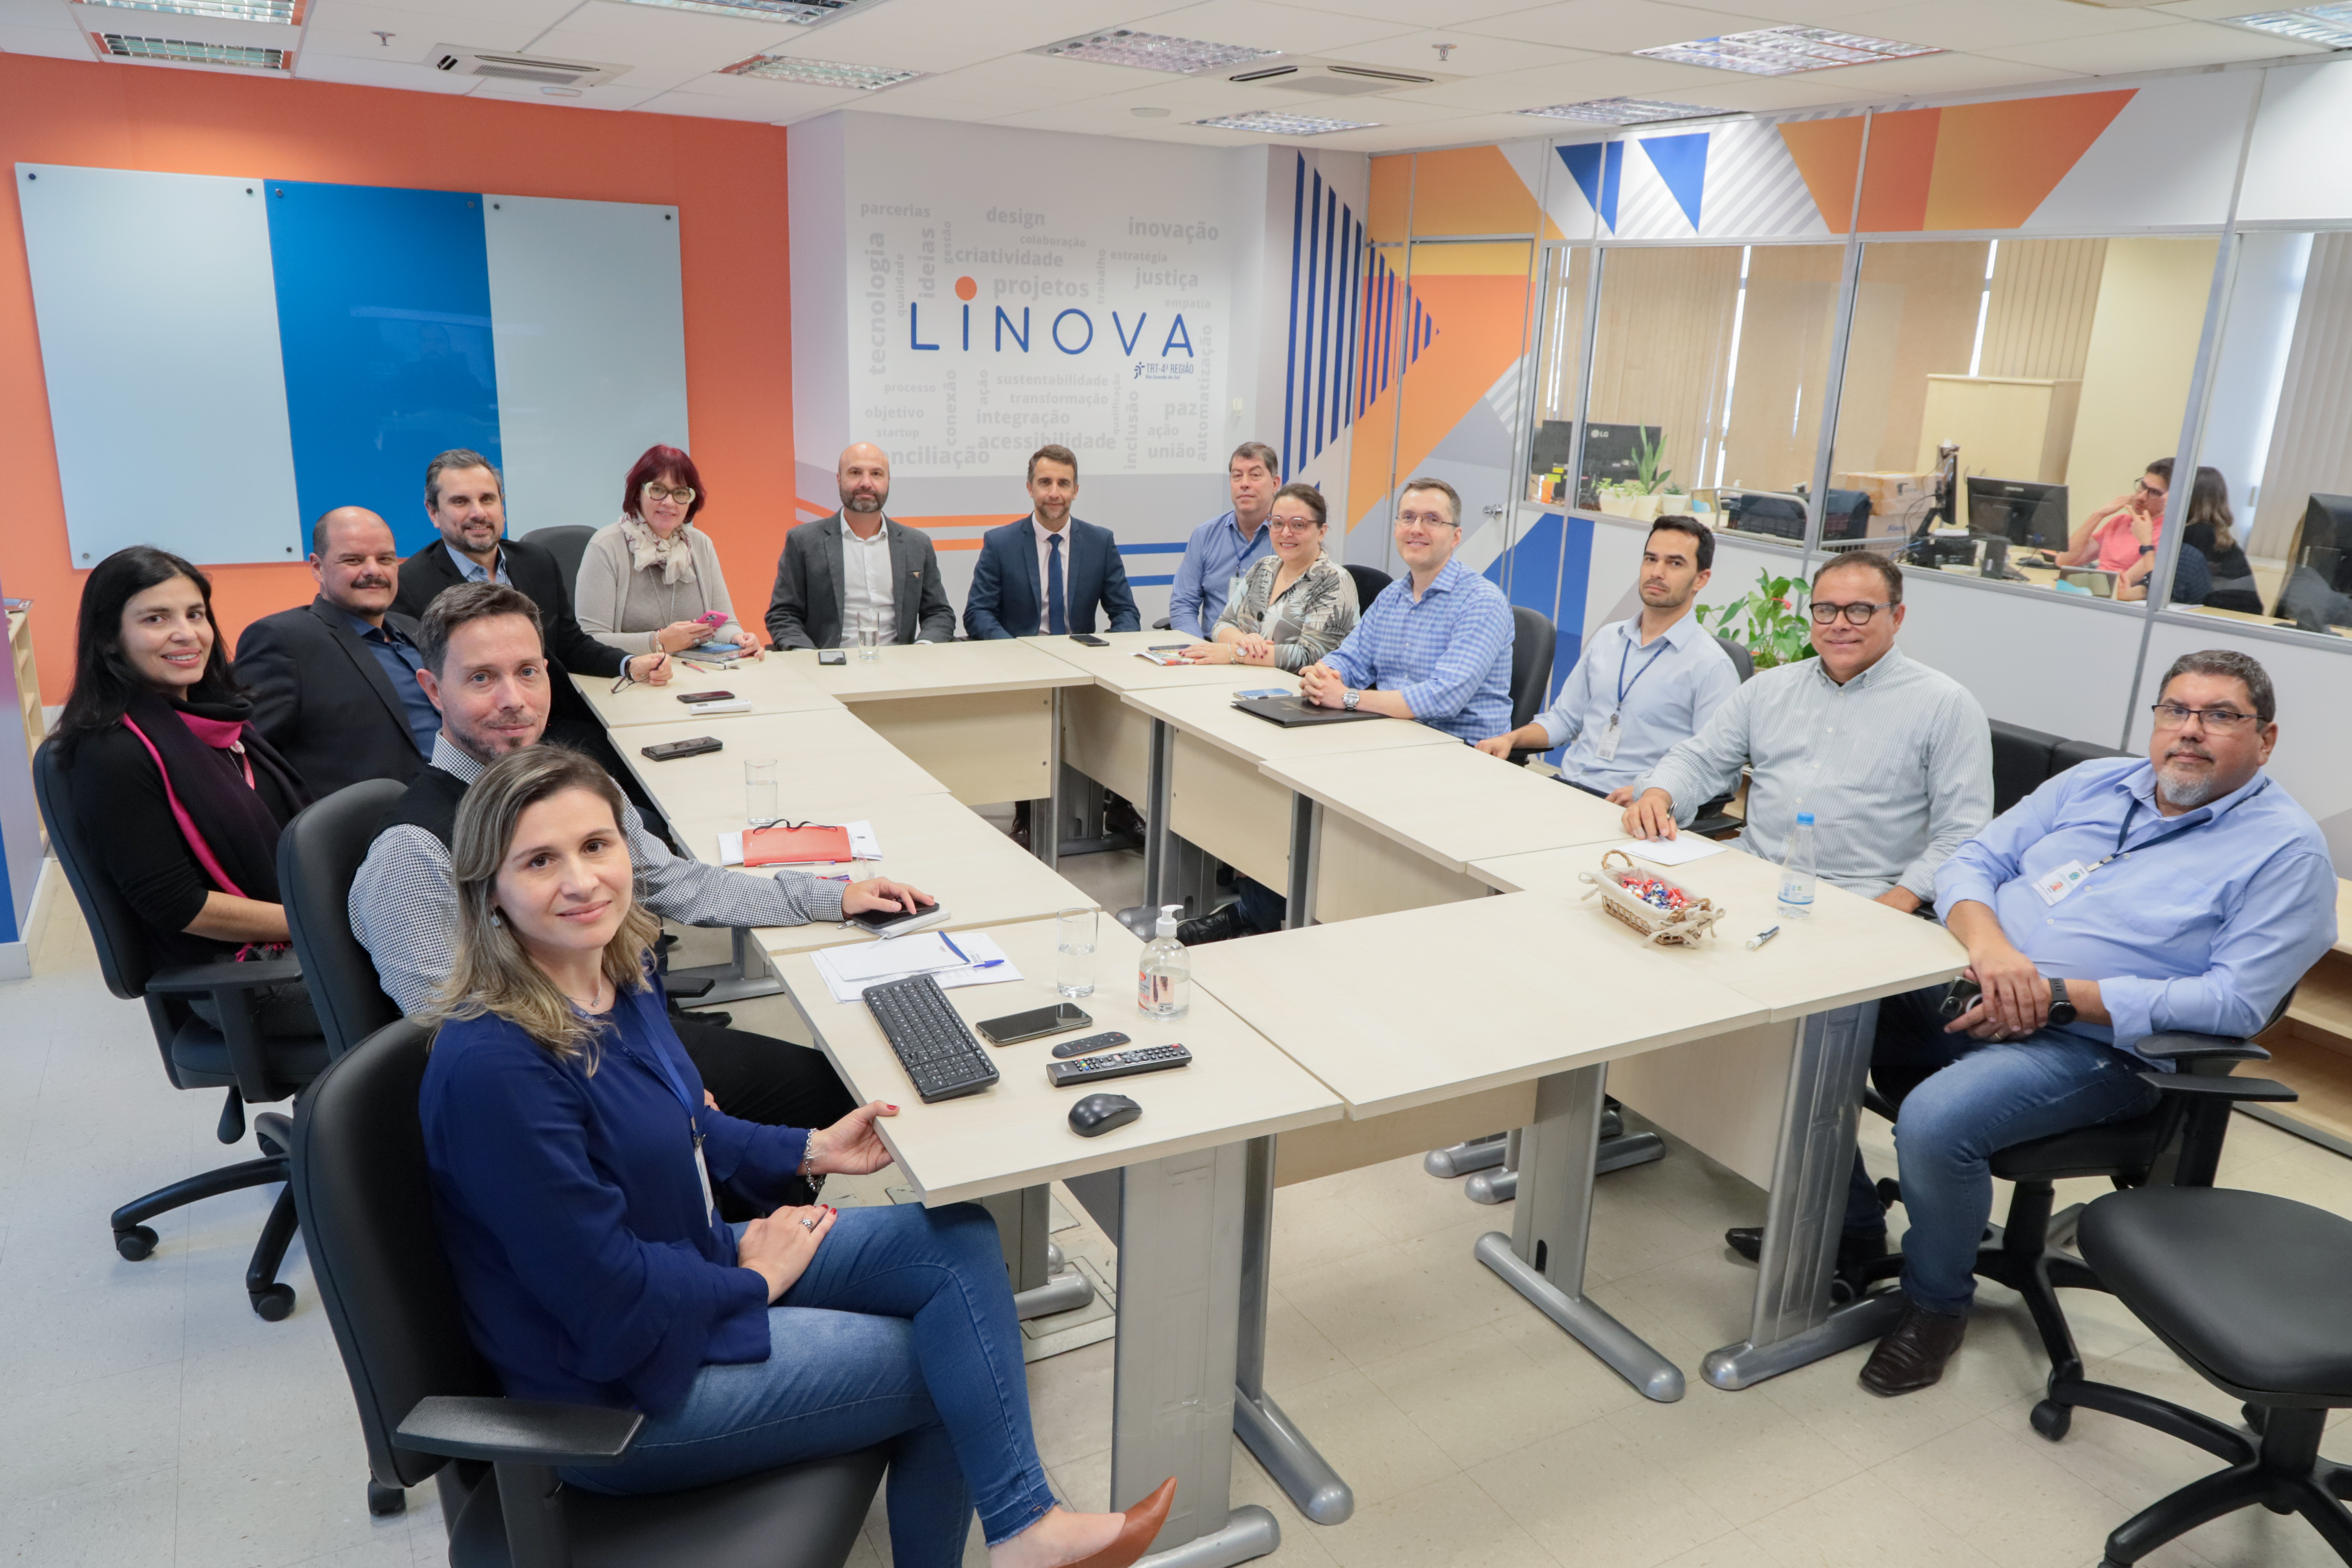 Subcomitê de Inovação do TRT-4 em reunião no Linova